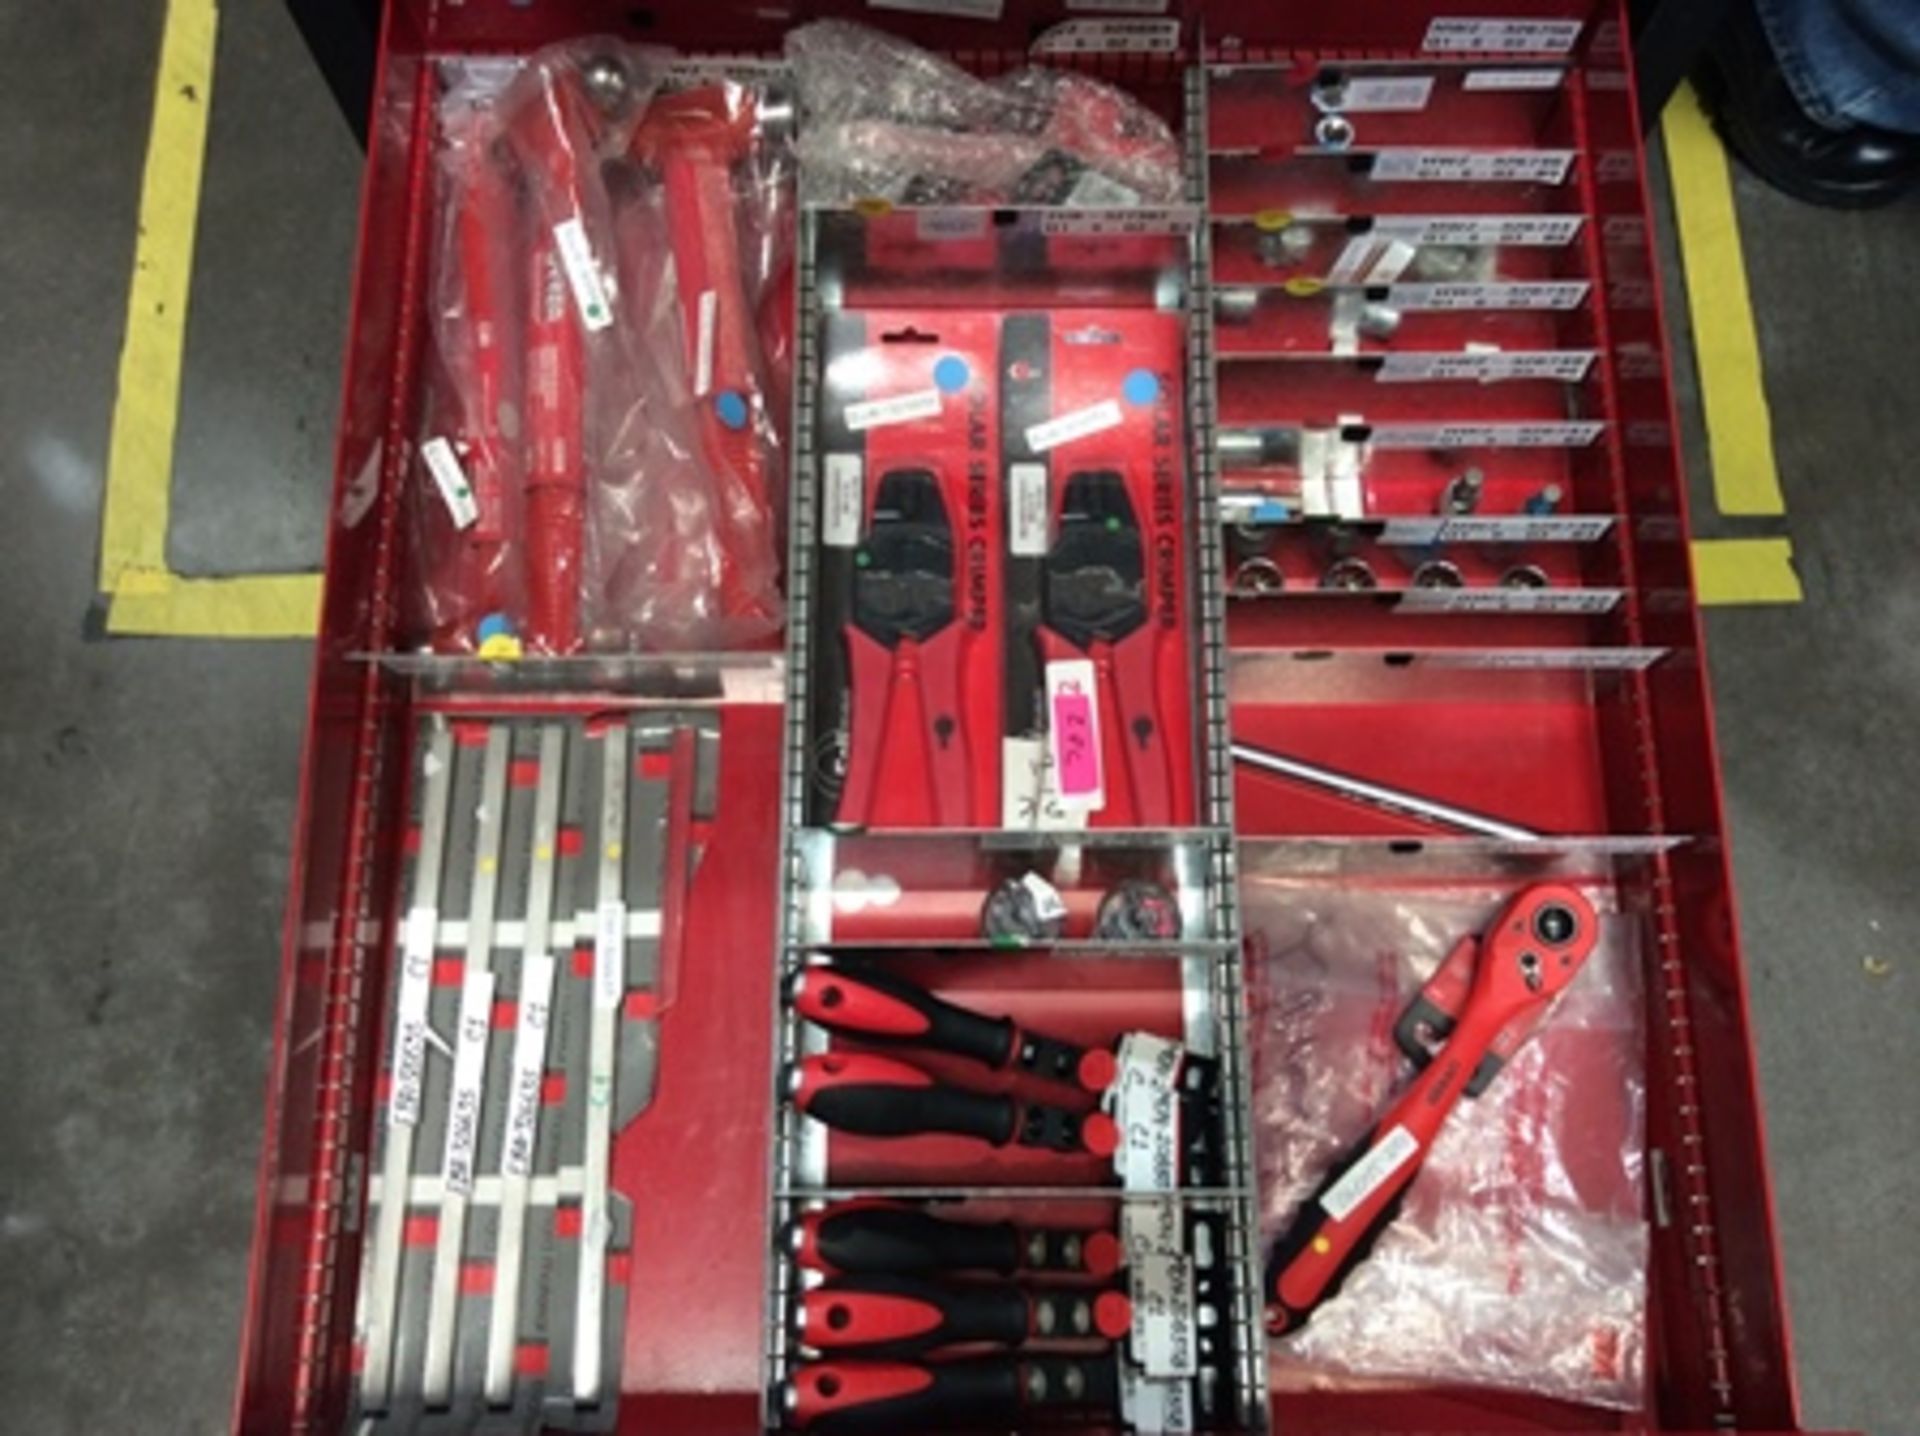 Gaveta de herramientas con 7 cajones que contiene; brocas, insertos, porta insertos, machuelos , - Image 8 of 21